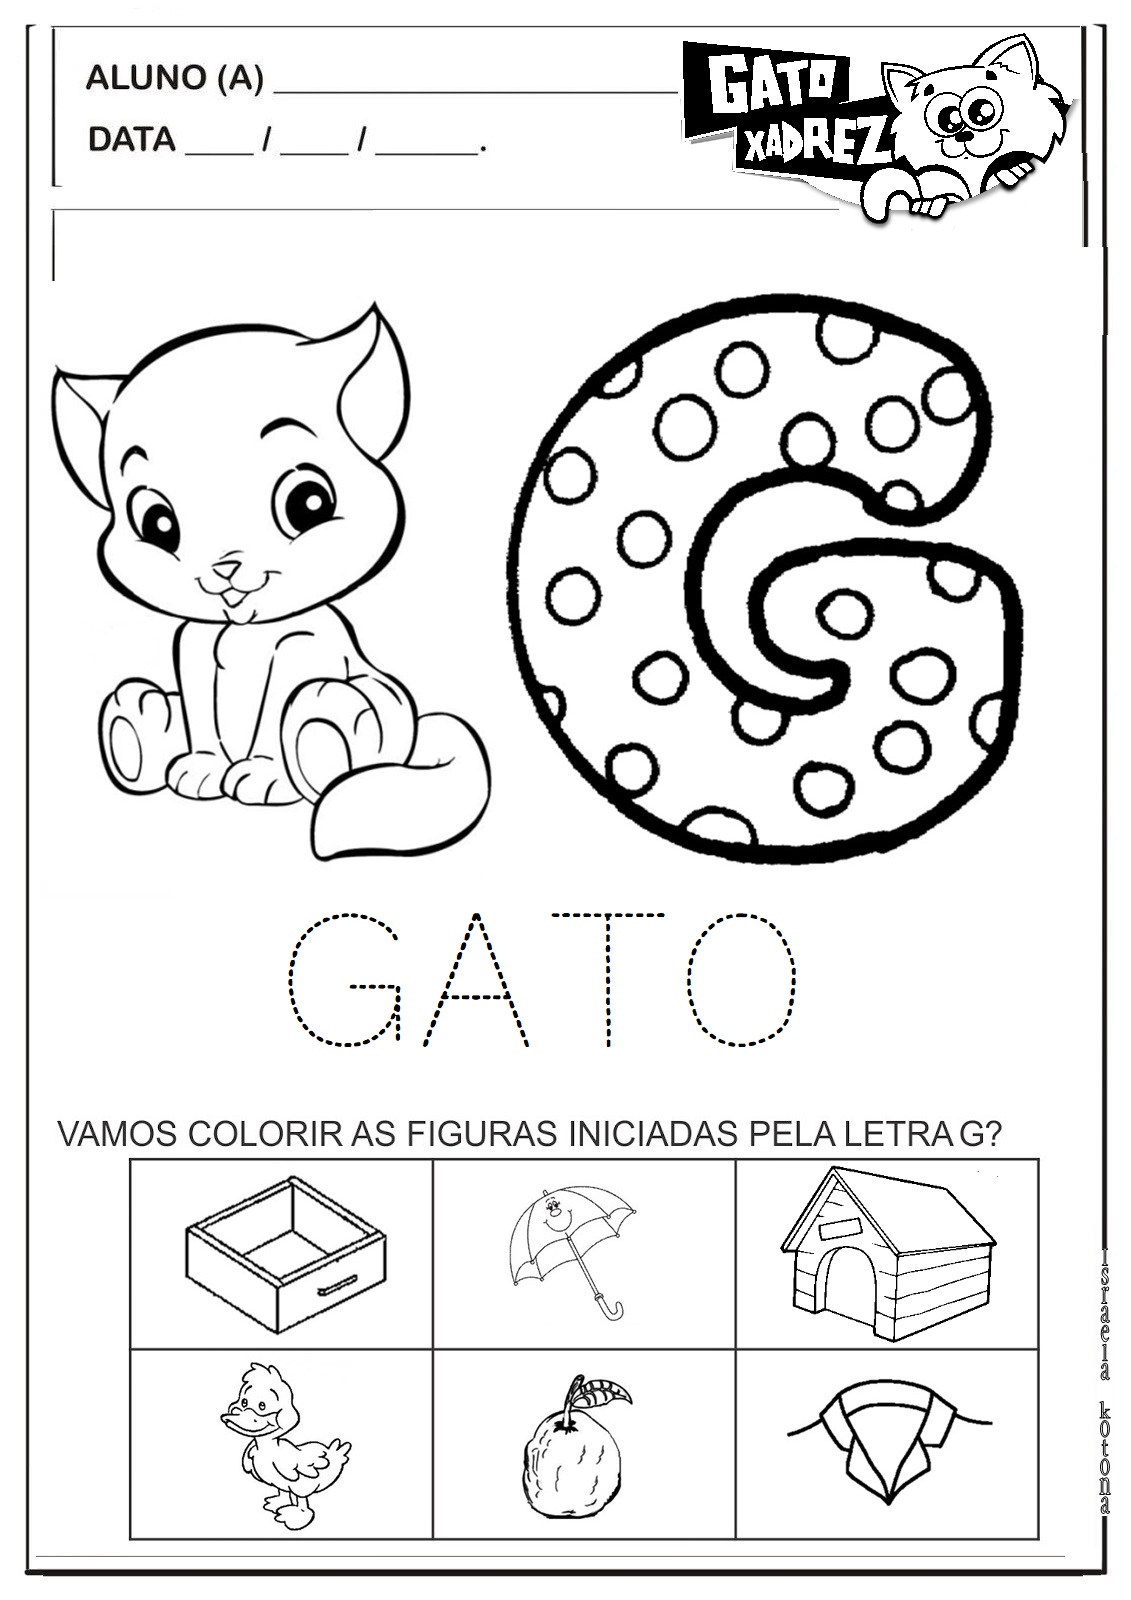 história do GATO XADREZ - Educação Infantil